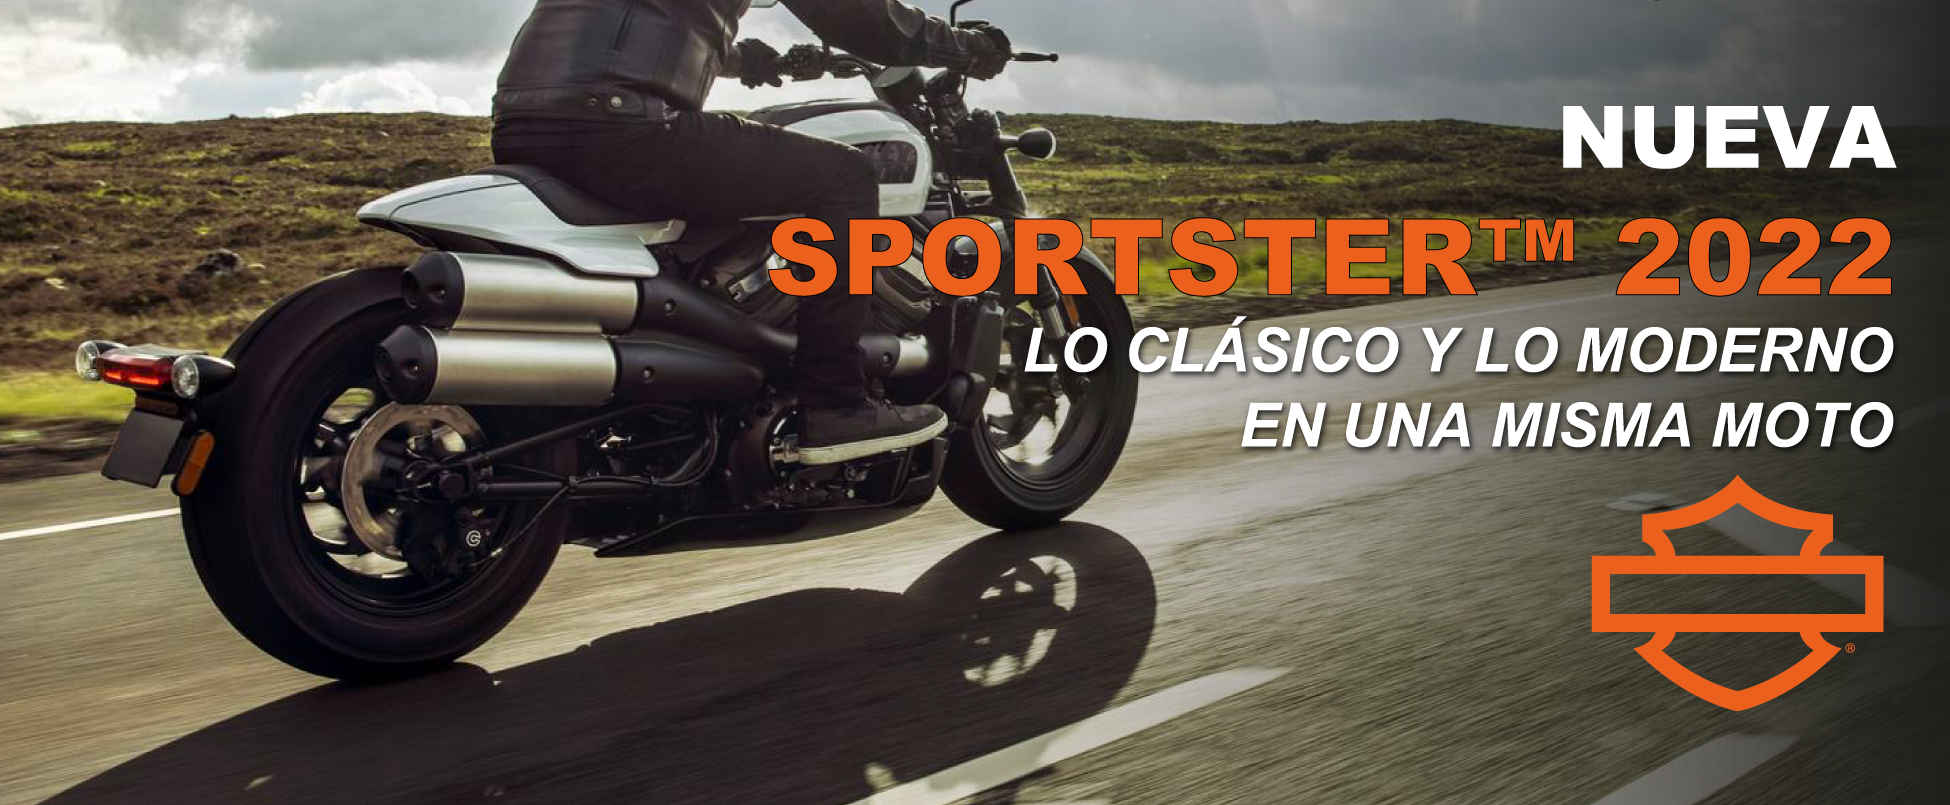 Nueva Harley Davidson Sportster 2022